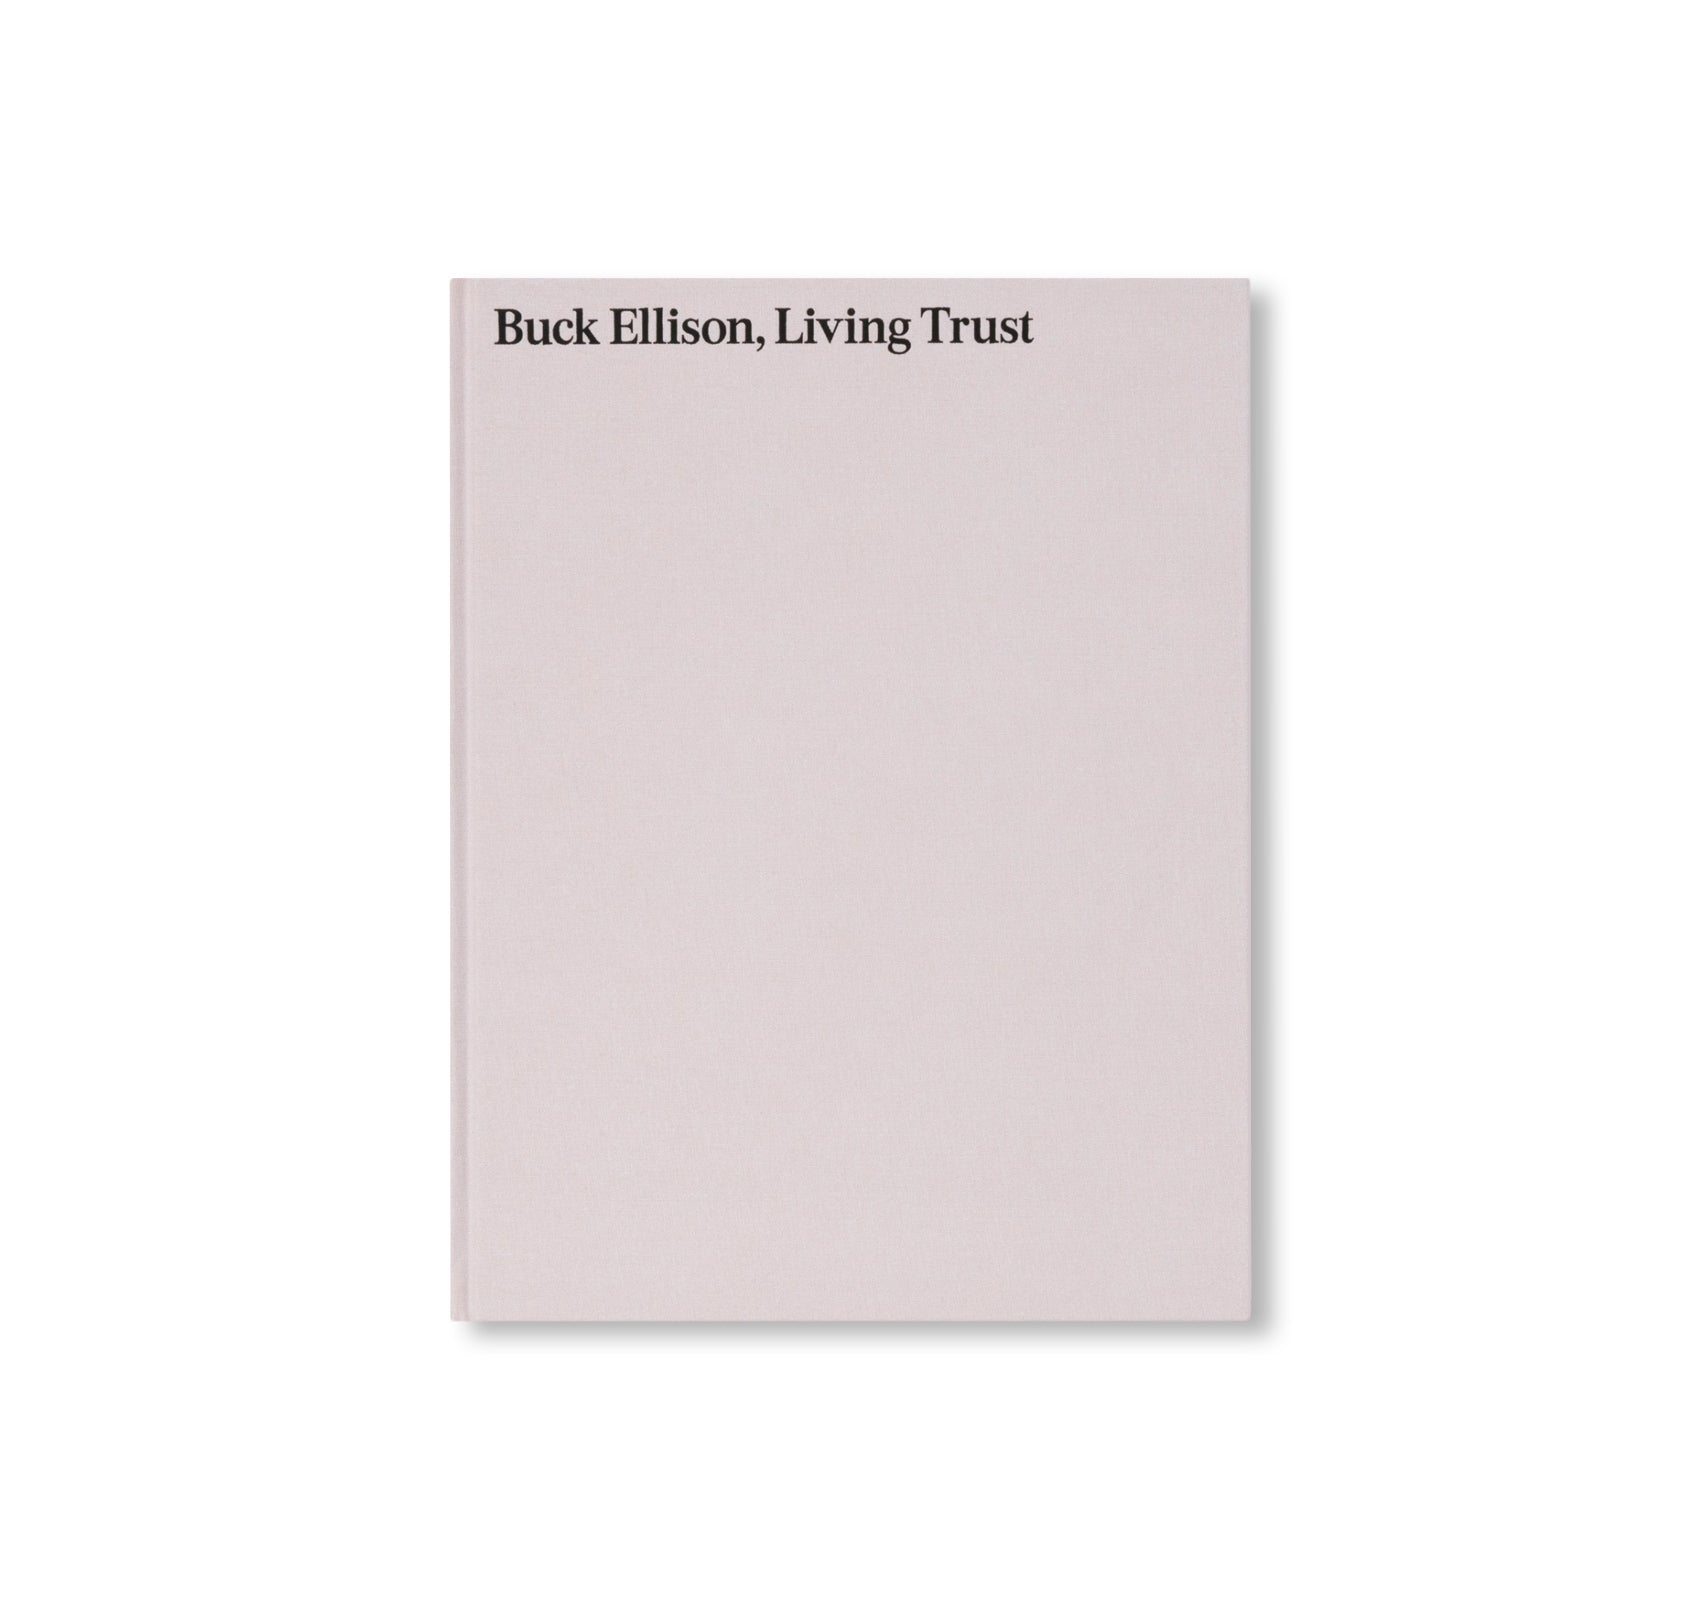 LIVING TRUST by Buck Ellison